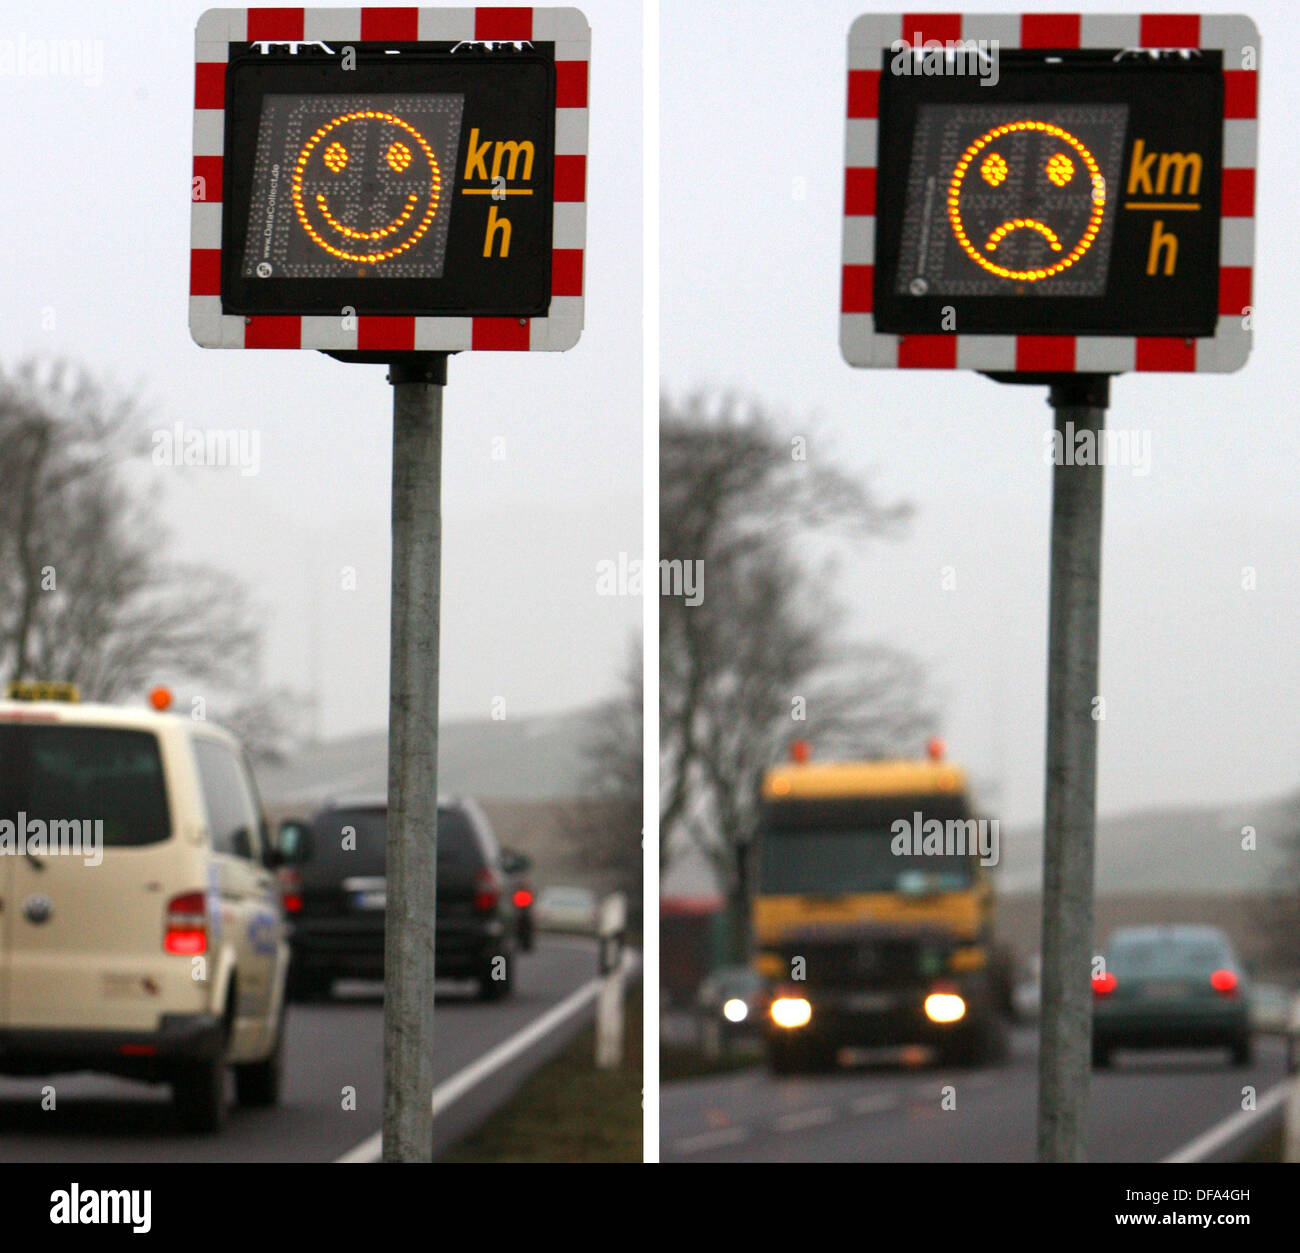 Les limites de vitesse électronique montrent un rire ou sourire smilie, photographié le 13 janvier en 2006. Banque D'Images